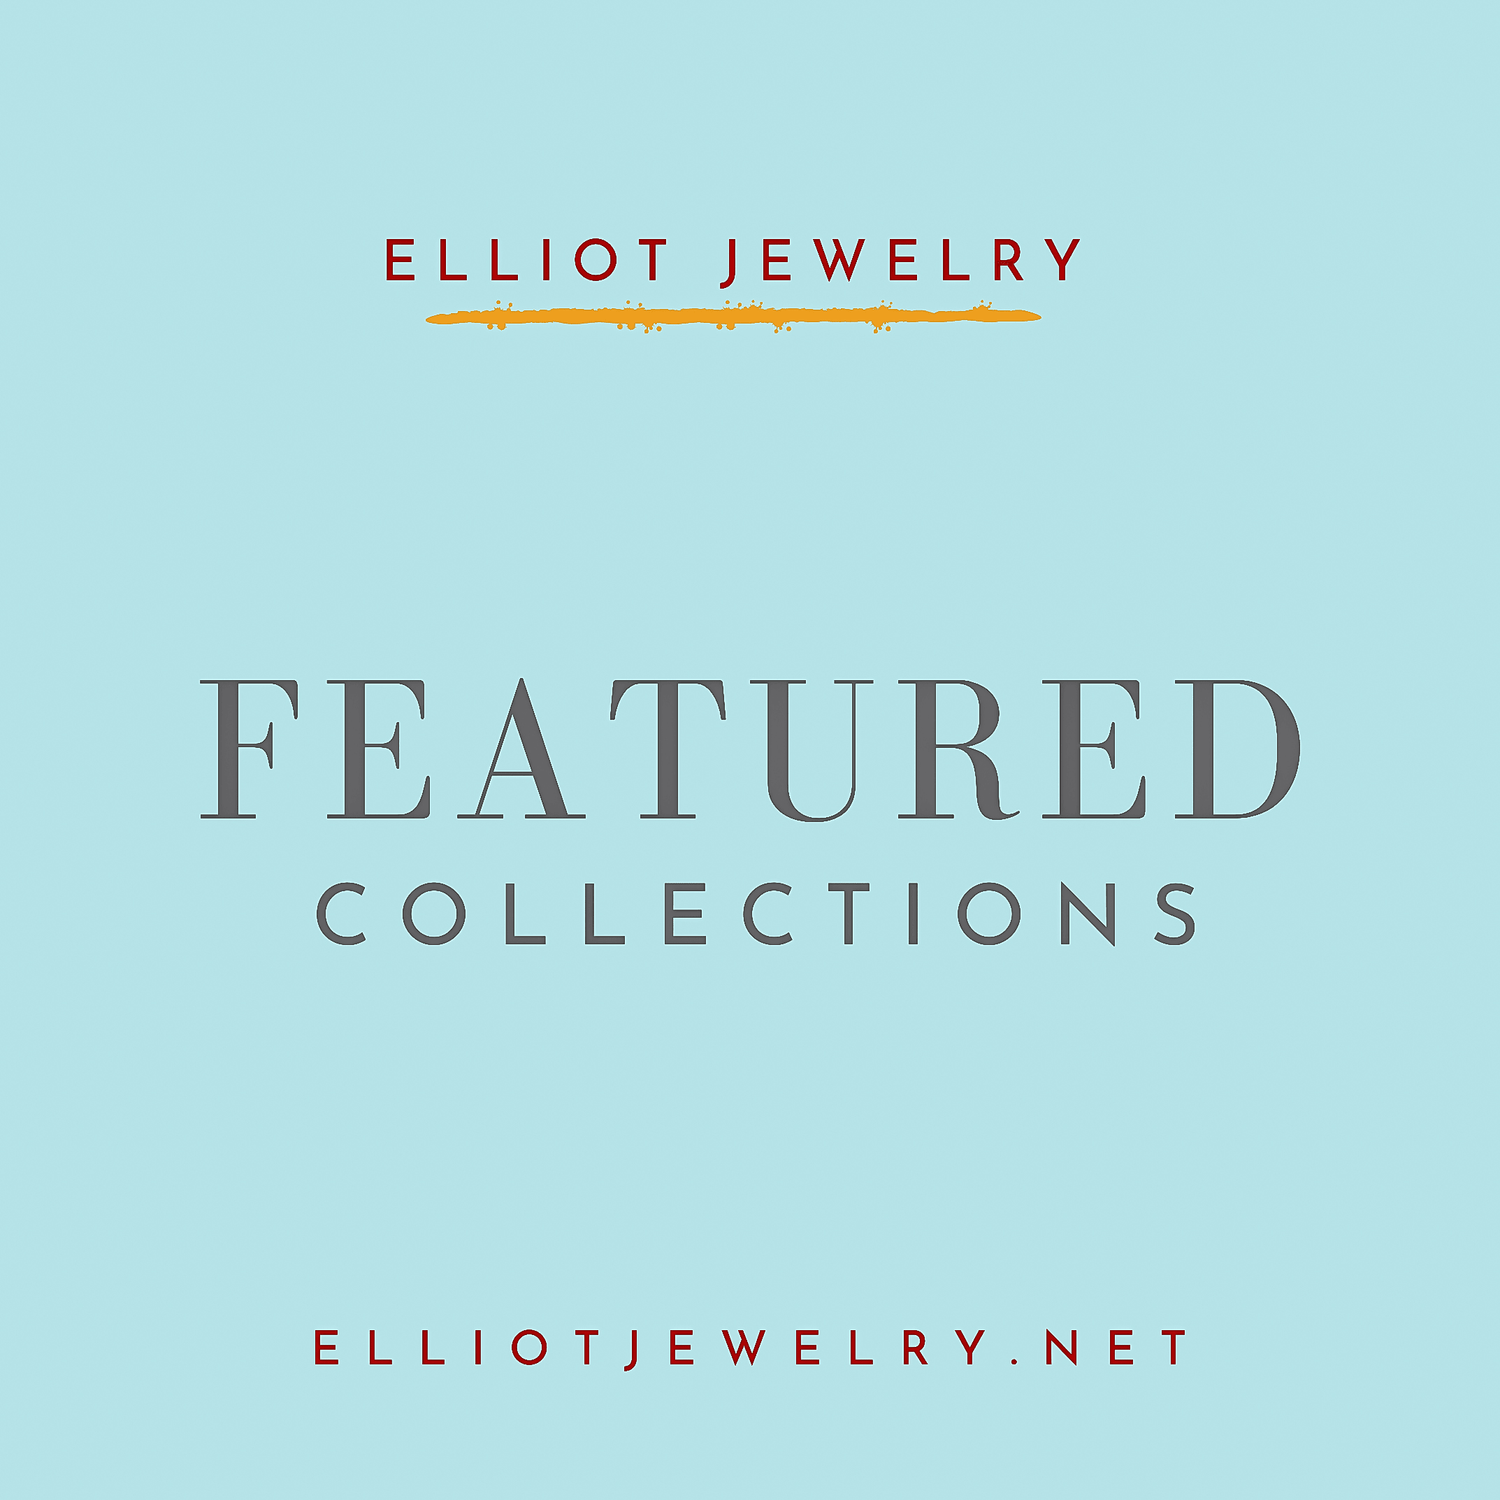 𝔽𝕖𝕒𝕥𝕦𝕣𝕖𝕕 ℂ𝕠𝕝𝕝𝕖𝕔𝕥𝕚𝕠𝕟 | Elliot Jewelry